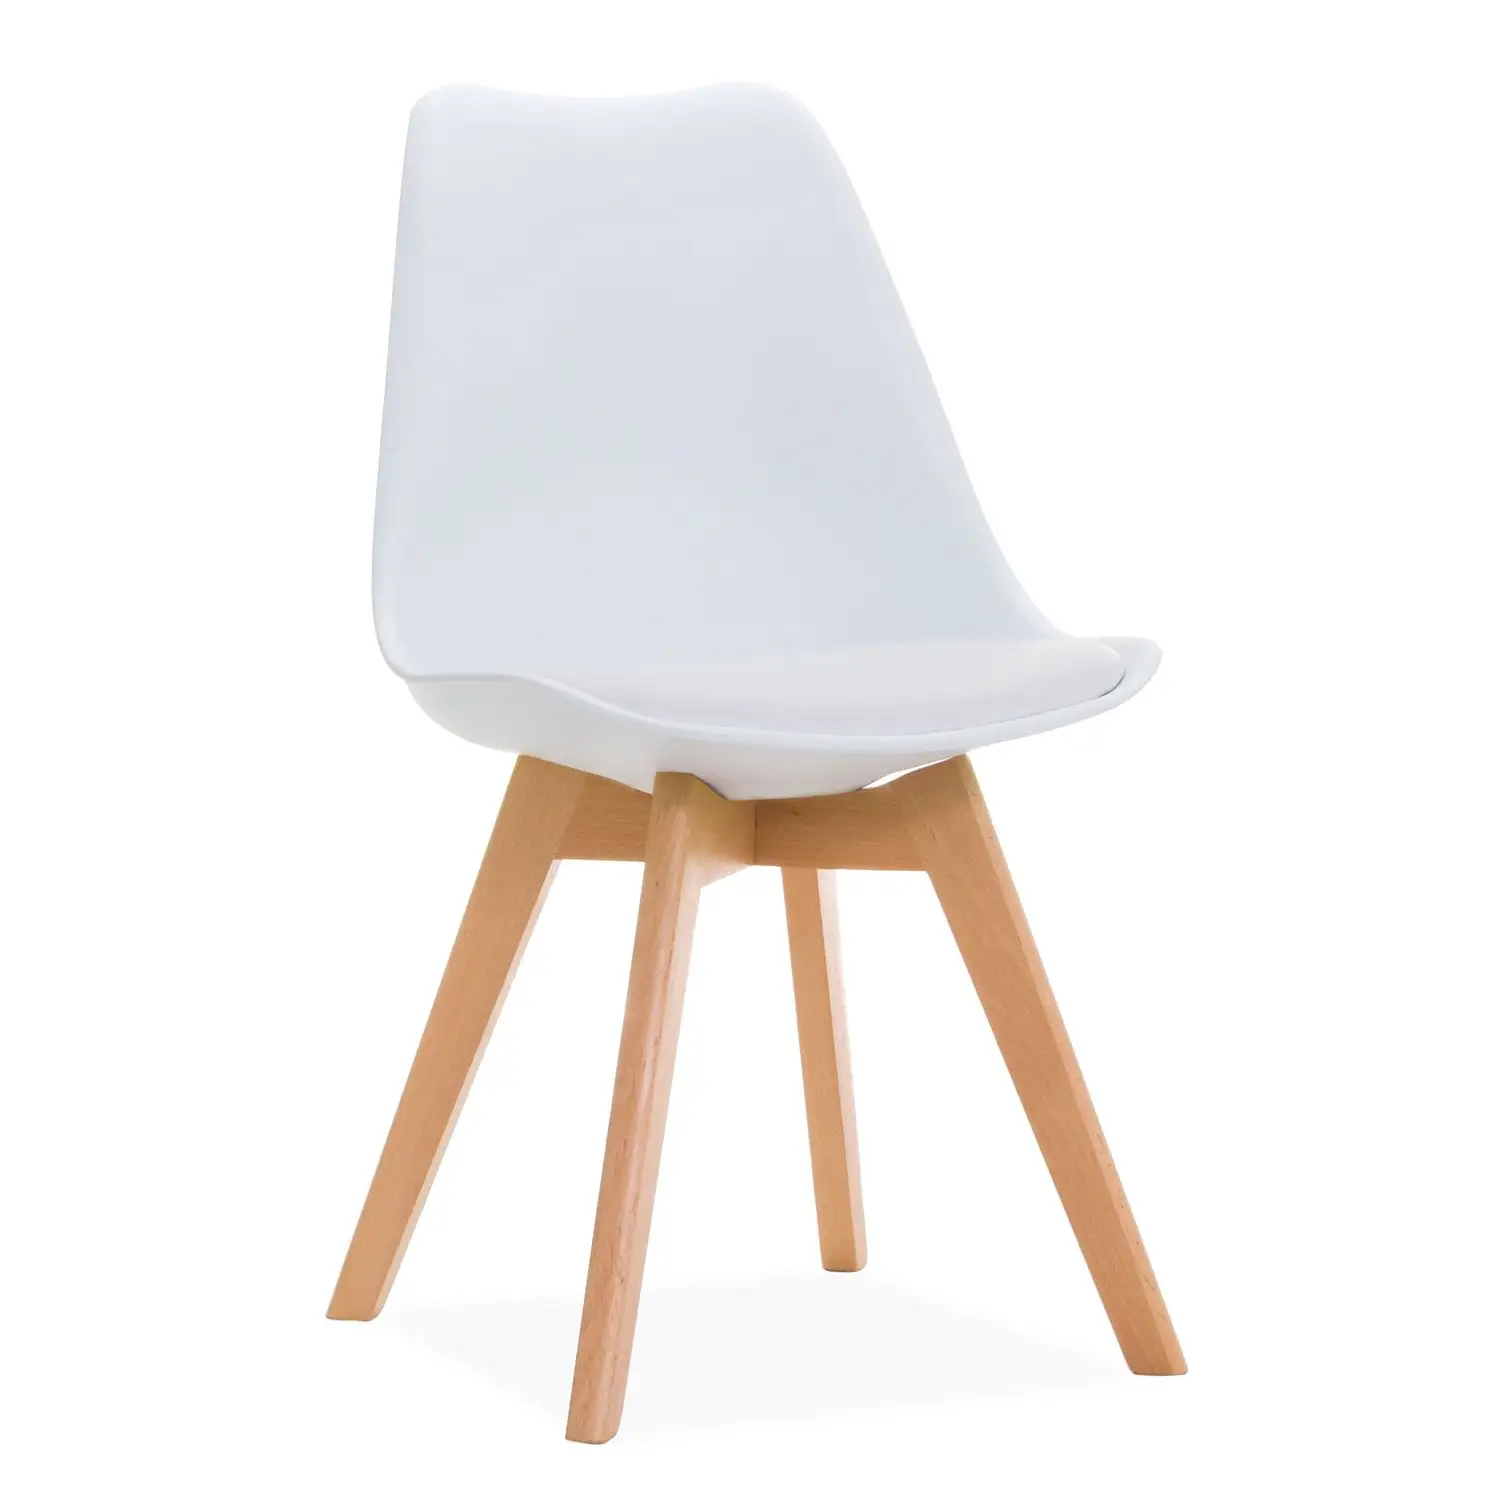 الحديثة نمط كرسي الطعام الكراسي ، قذيفة صالة كرسي من البلاستيك مع الطبيعي الخشب الساقين ، التسليم في الوقت المناسب